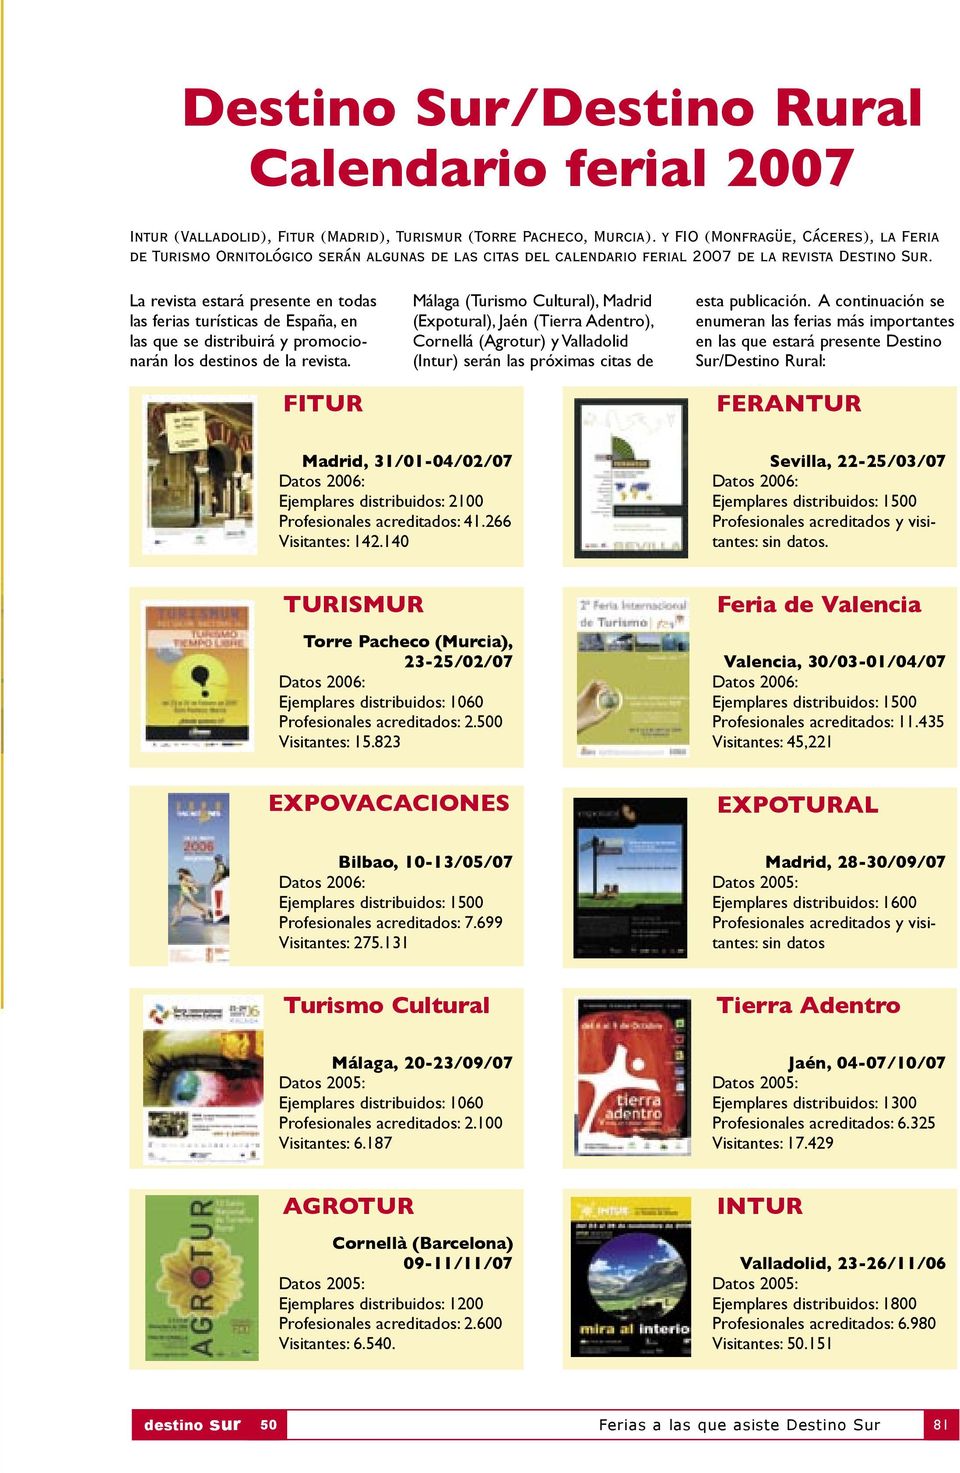 La revista estará presente en todas las ferias turísticas de España, en las que se distribuirá y promocionarán los destinos de la revista.